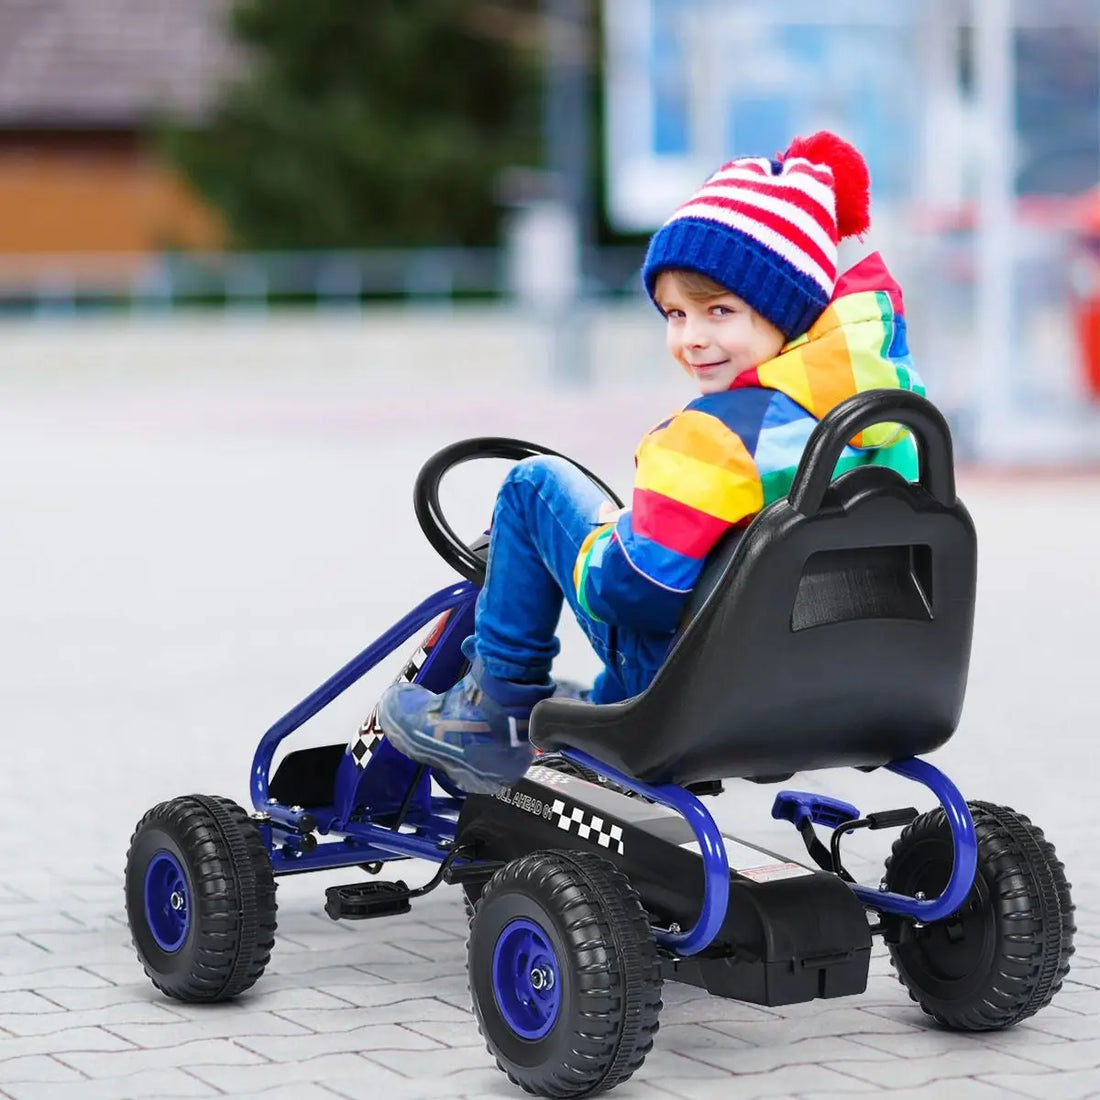 Pedal Kart Bicicleta Infantil e Assento Ajustável para Veículo com Freio de Mão 3-6 Anos Azul